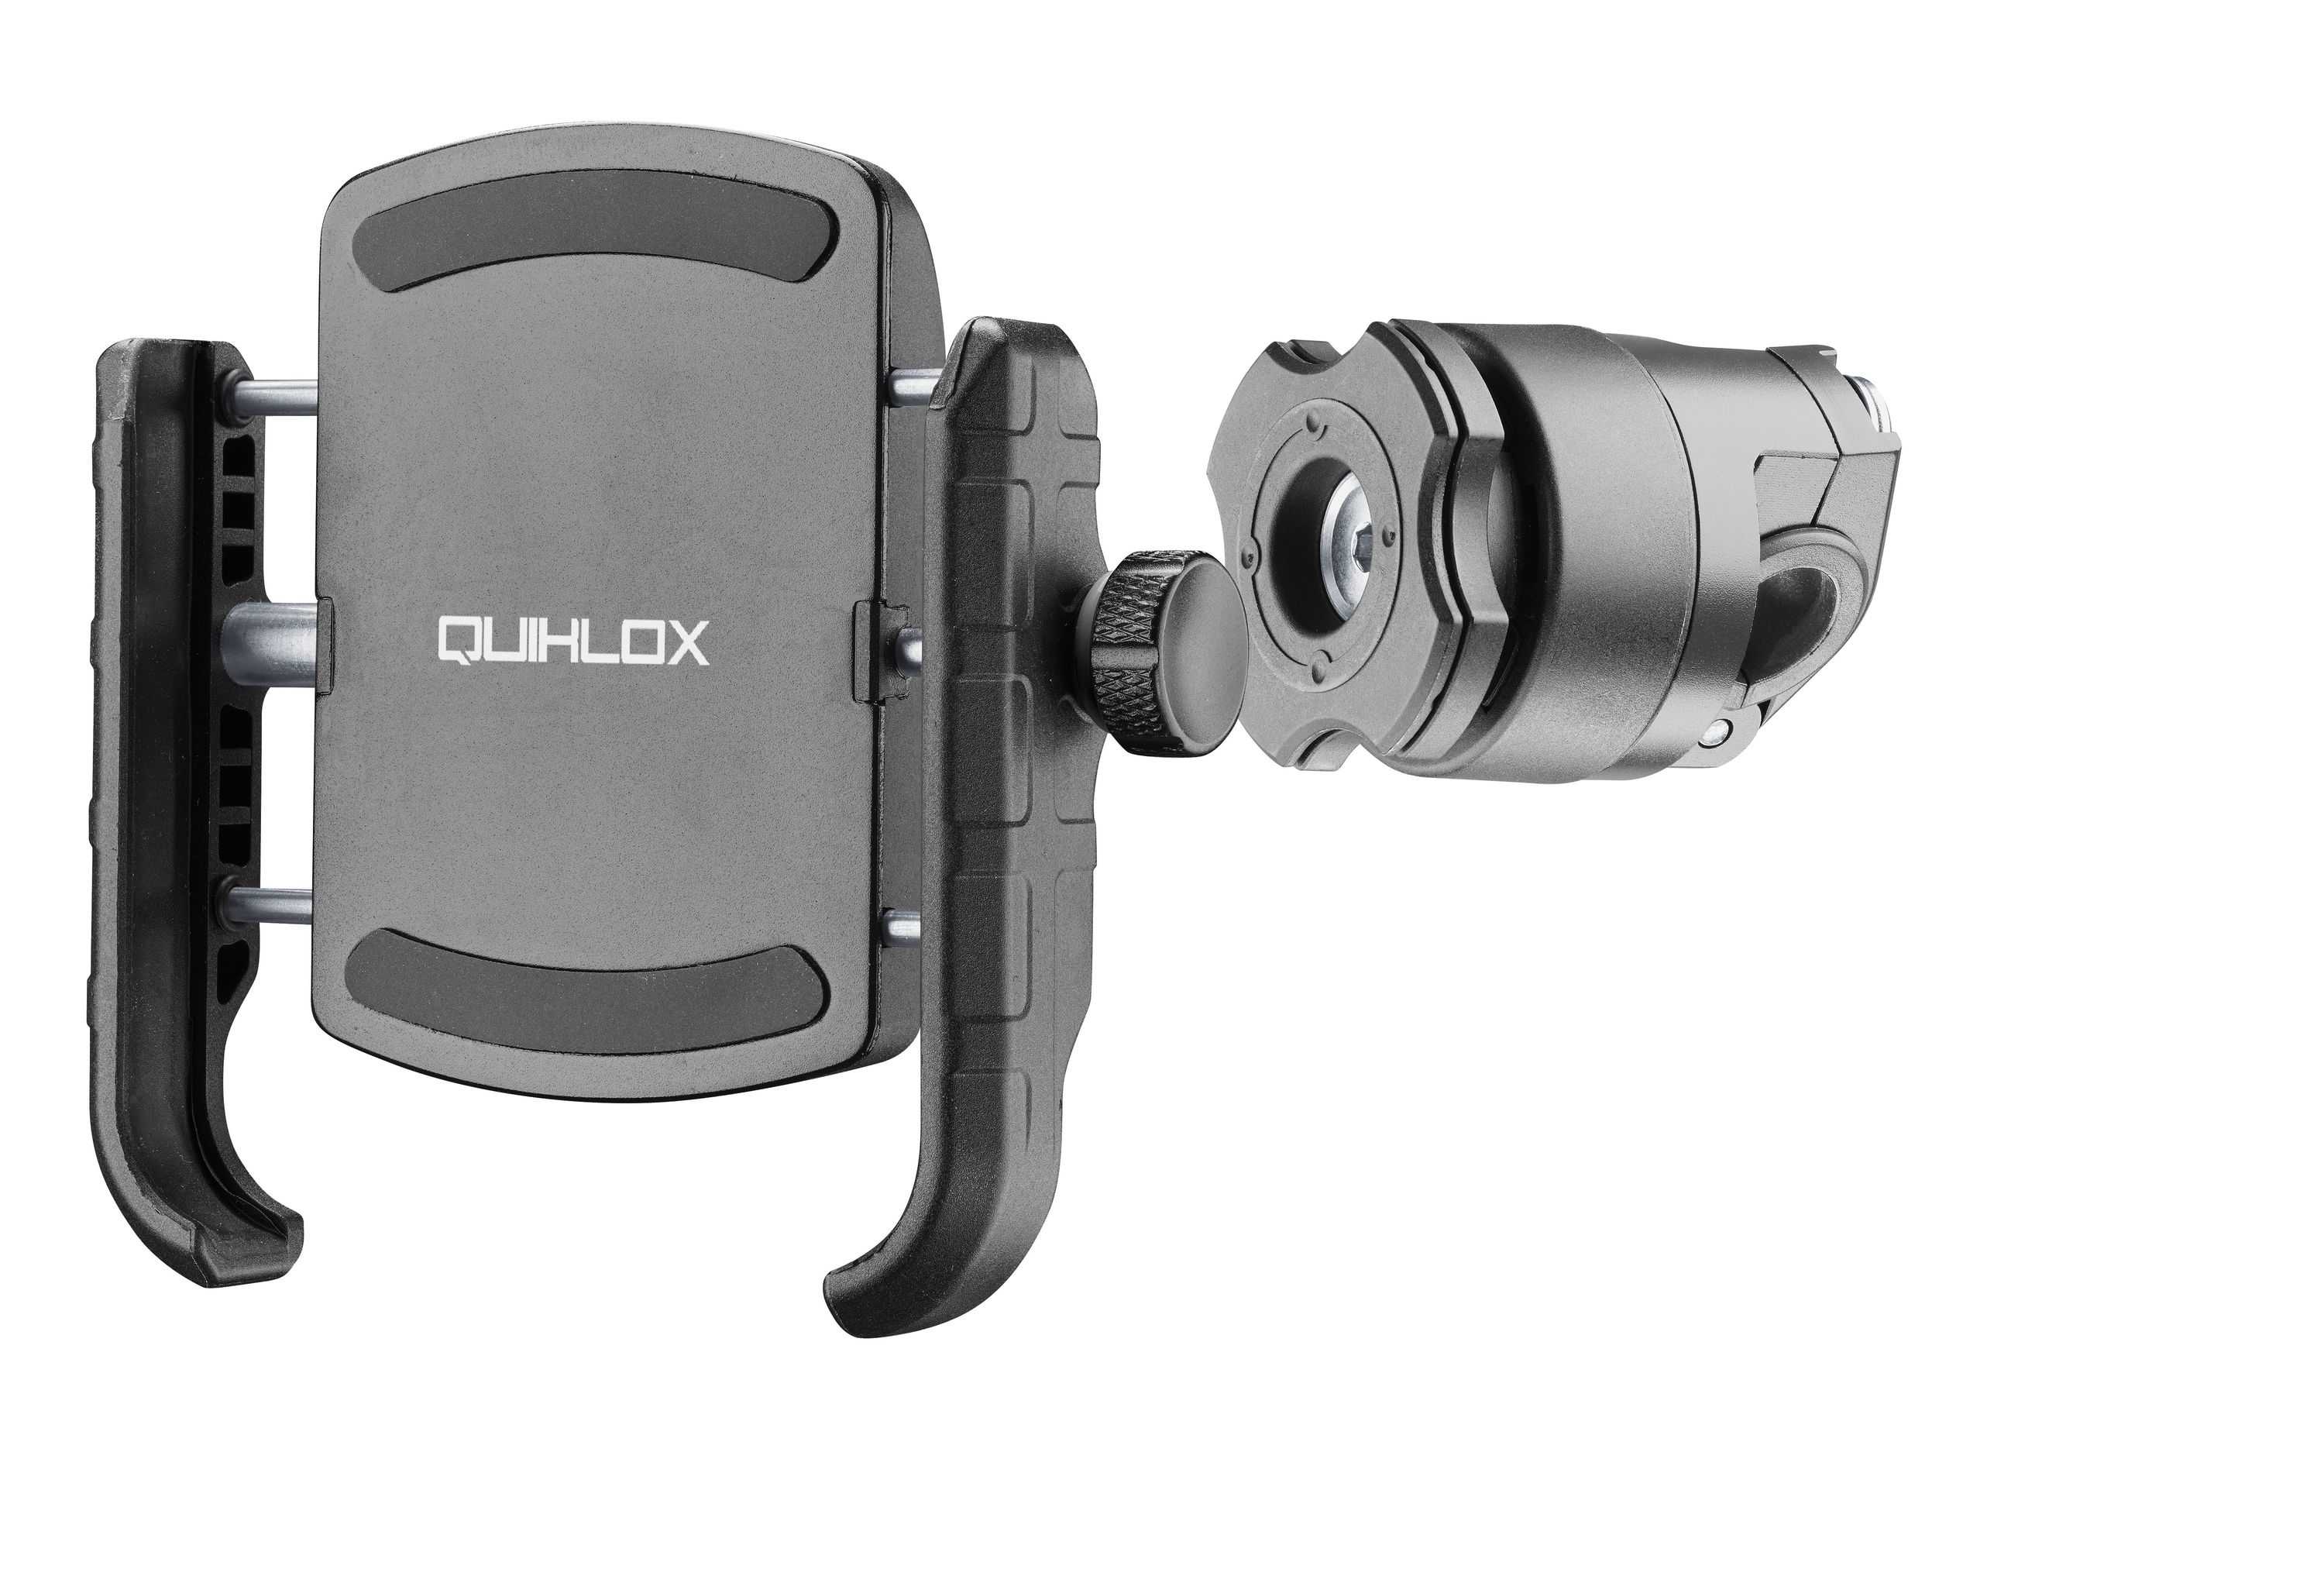 Interphone Quiklox Handyhalter inkl. Halter